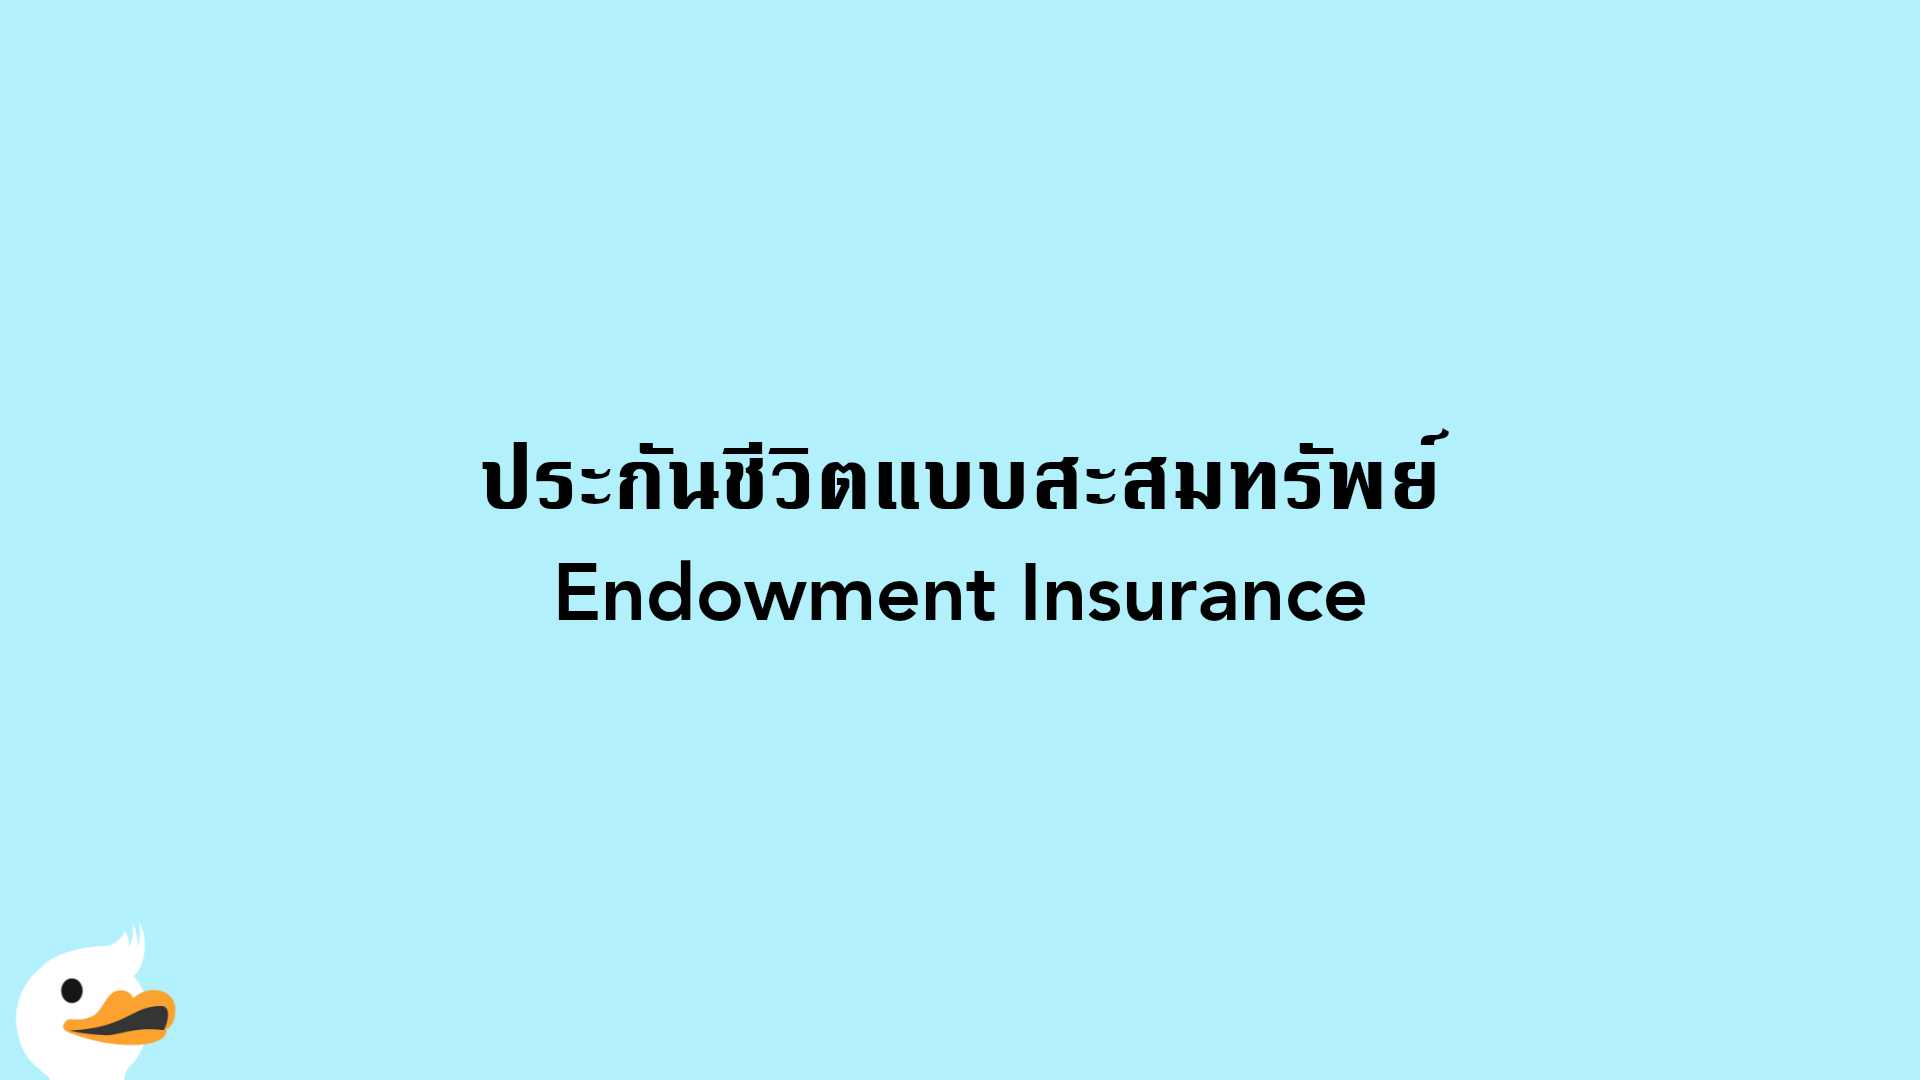 ประกันชีวิตแบบสะสมทรัพย์ Endowment Insurance